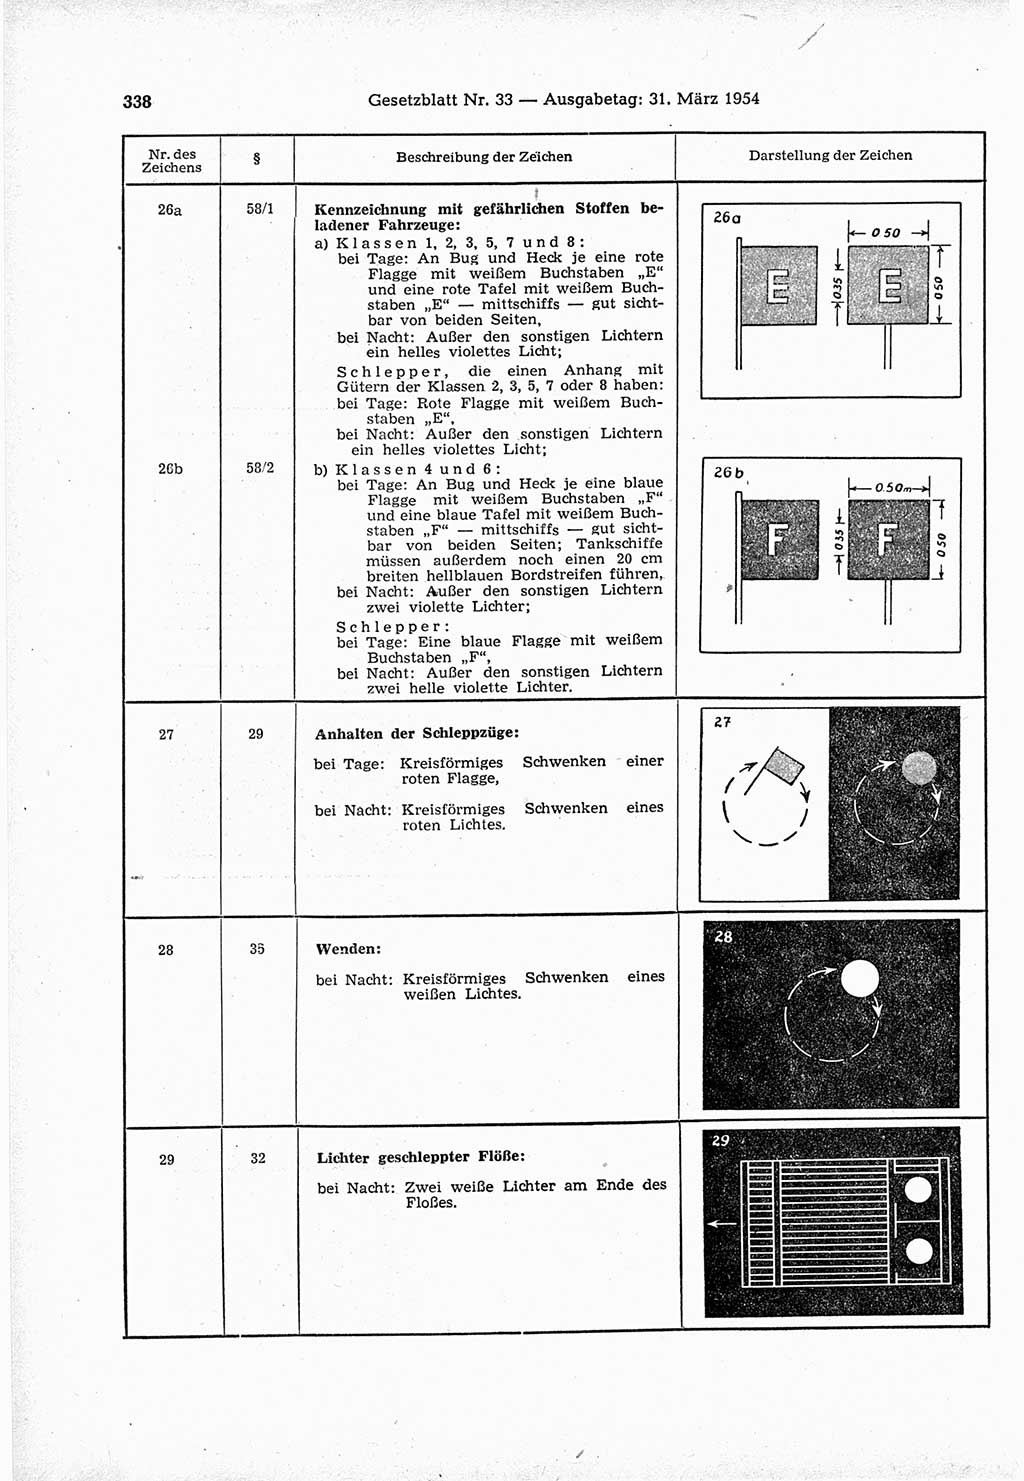 Gesetzblatt (GBl.) der Deutschen Demokratischen Republik (DDR) 1954, Seite 338 (GBl. DDR 1954, S. 338)